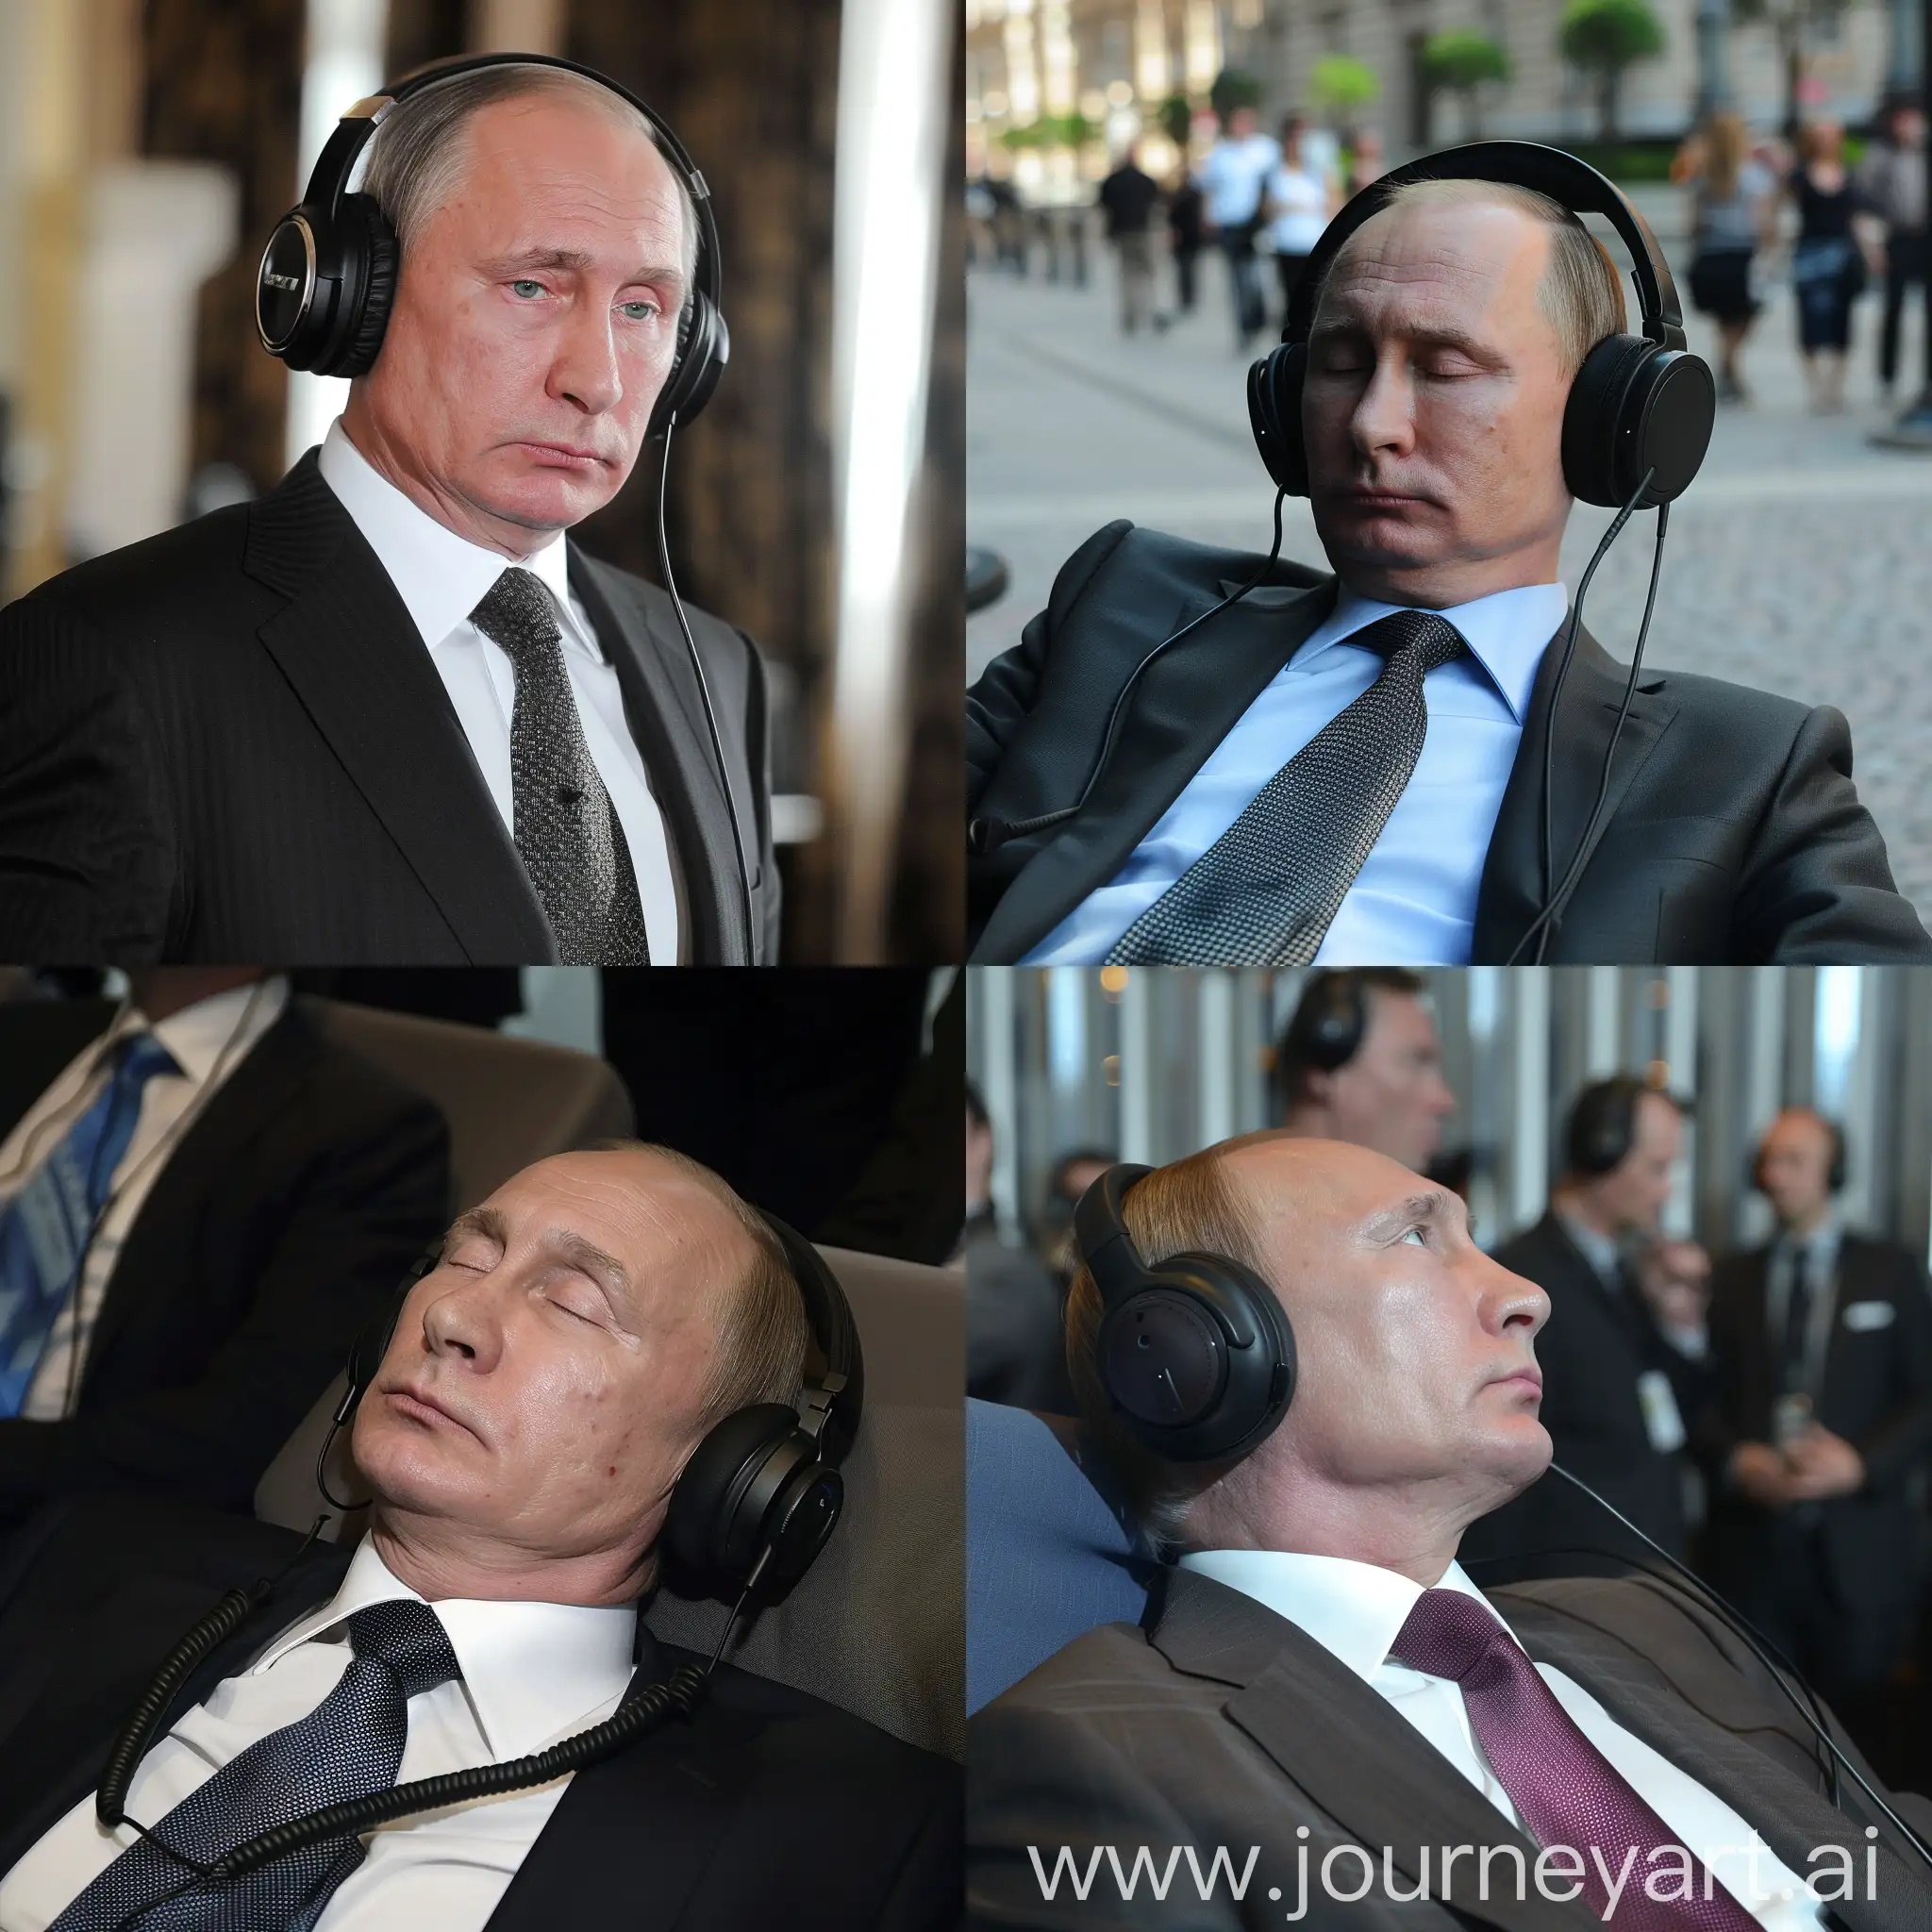 Putin in headphones